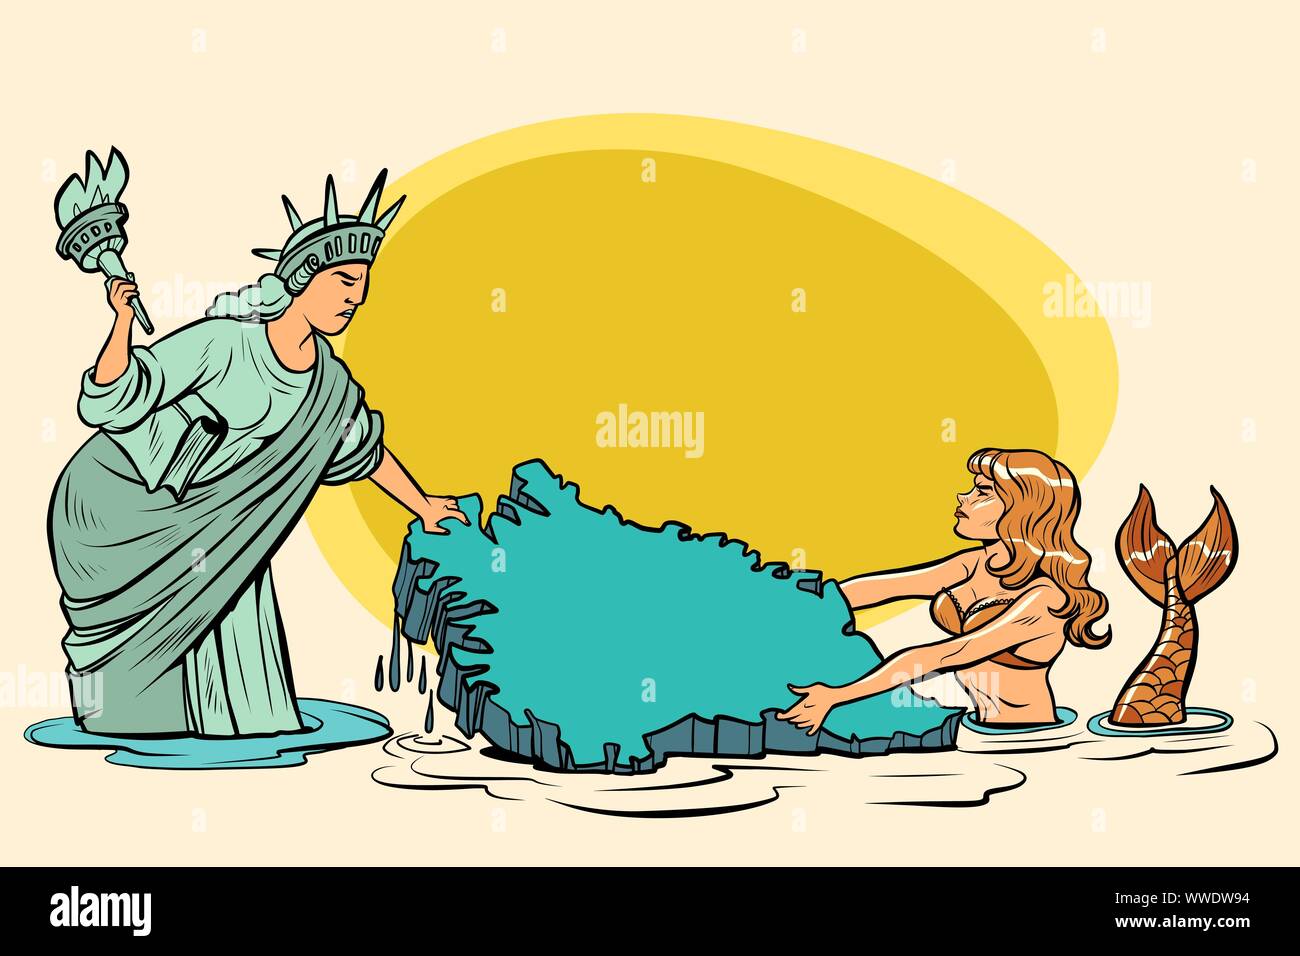 Karikatur. USA und Dänemark Grönland ziehen. Amerikanischen Freiheitsstatue gegen dänische Meerjungfrau. Comic cartoon Pop Art retro Vektor Illustration zeichnen Stock Vektor